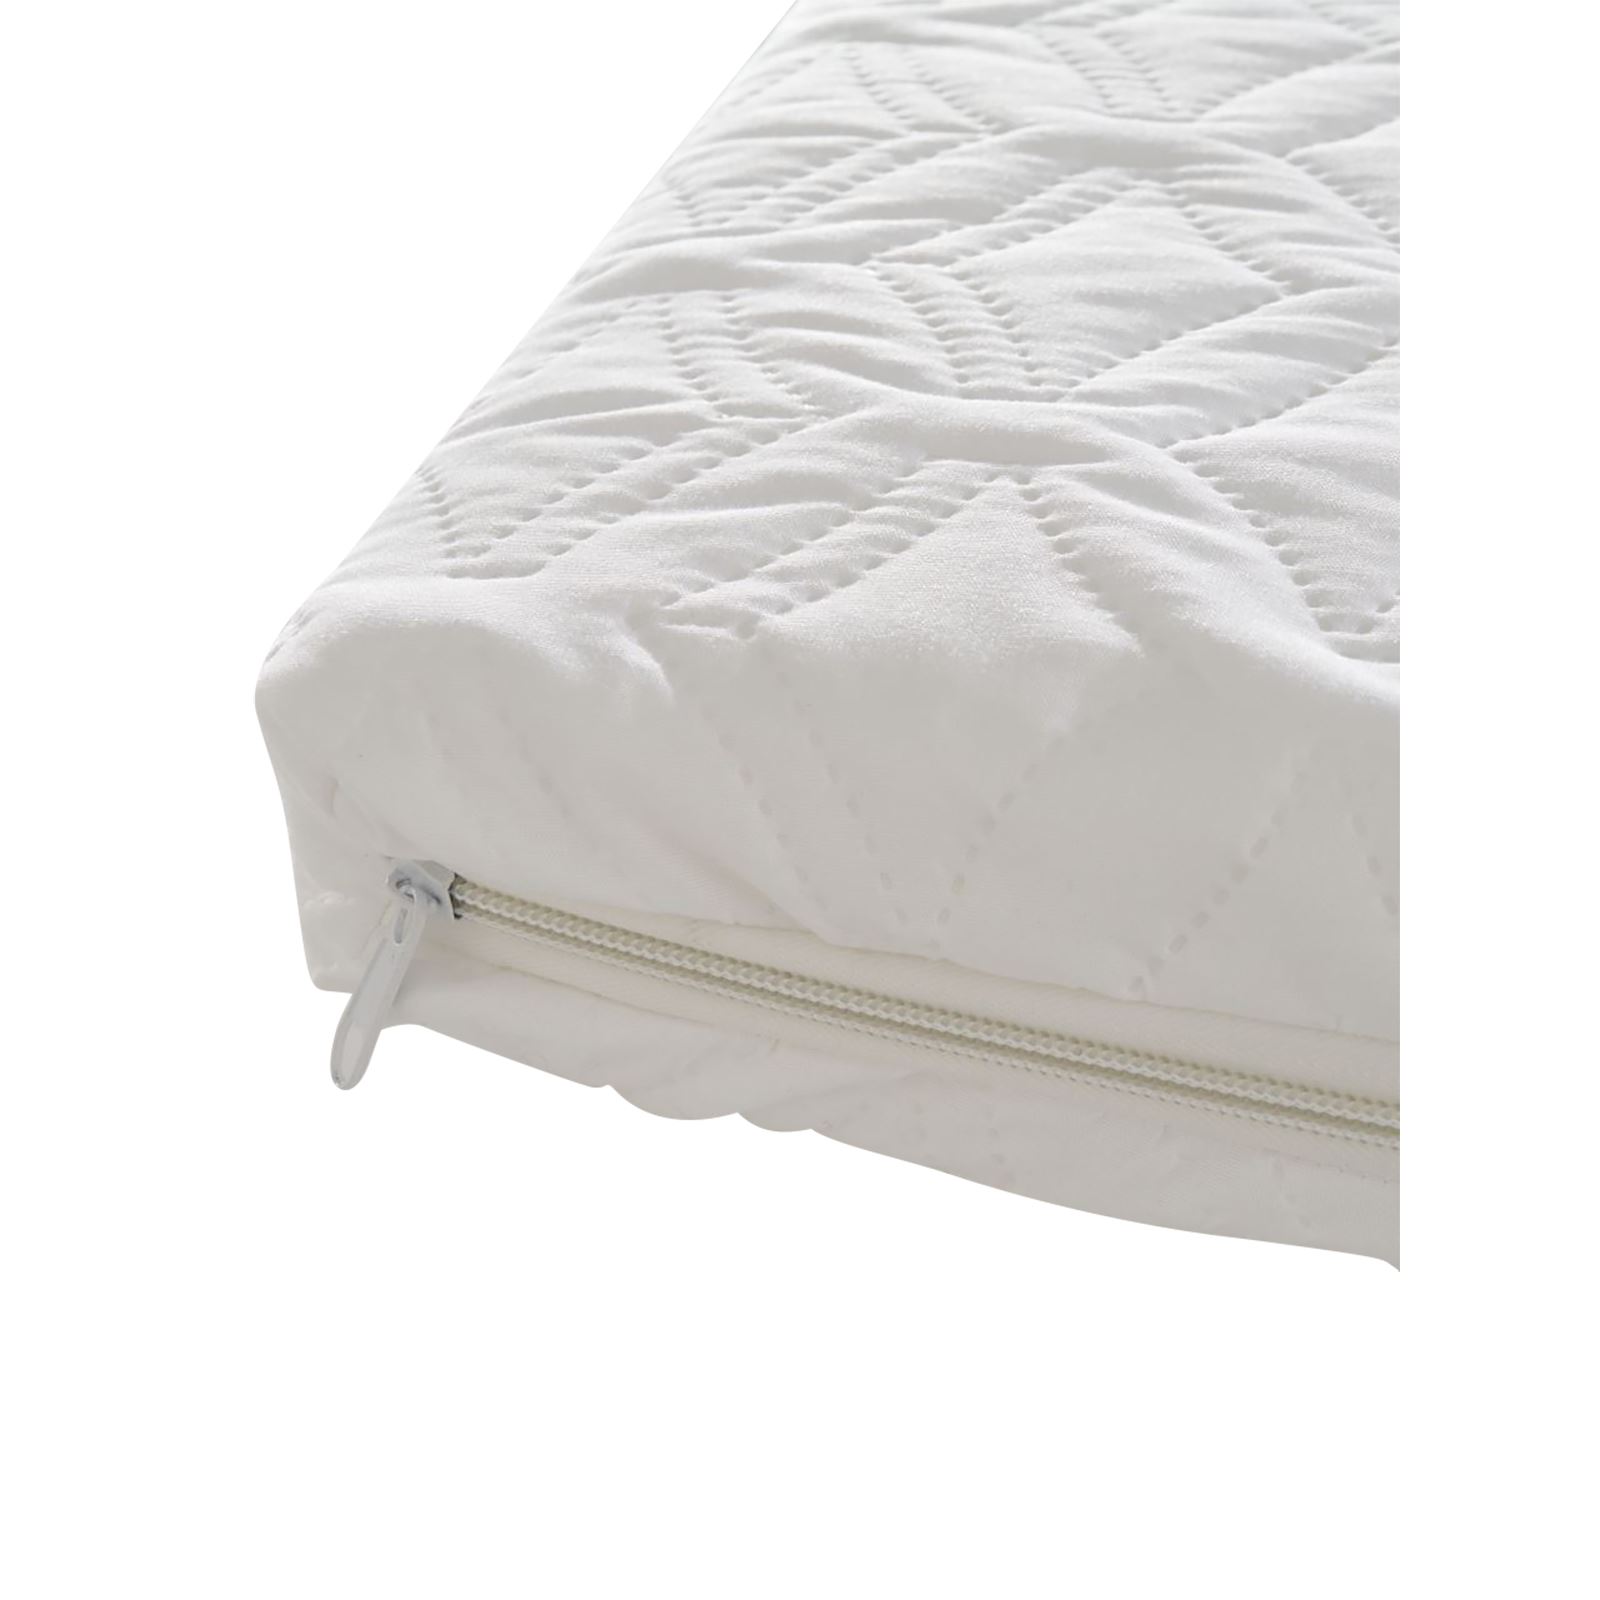 Keremce Lüks Sünger Oyun Parkı Yatağı 60x120 Yatak Beyaz